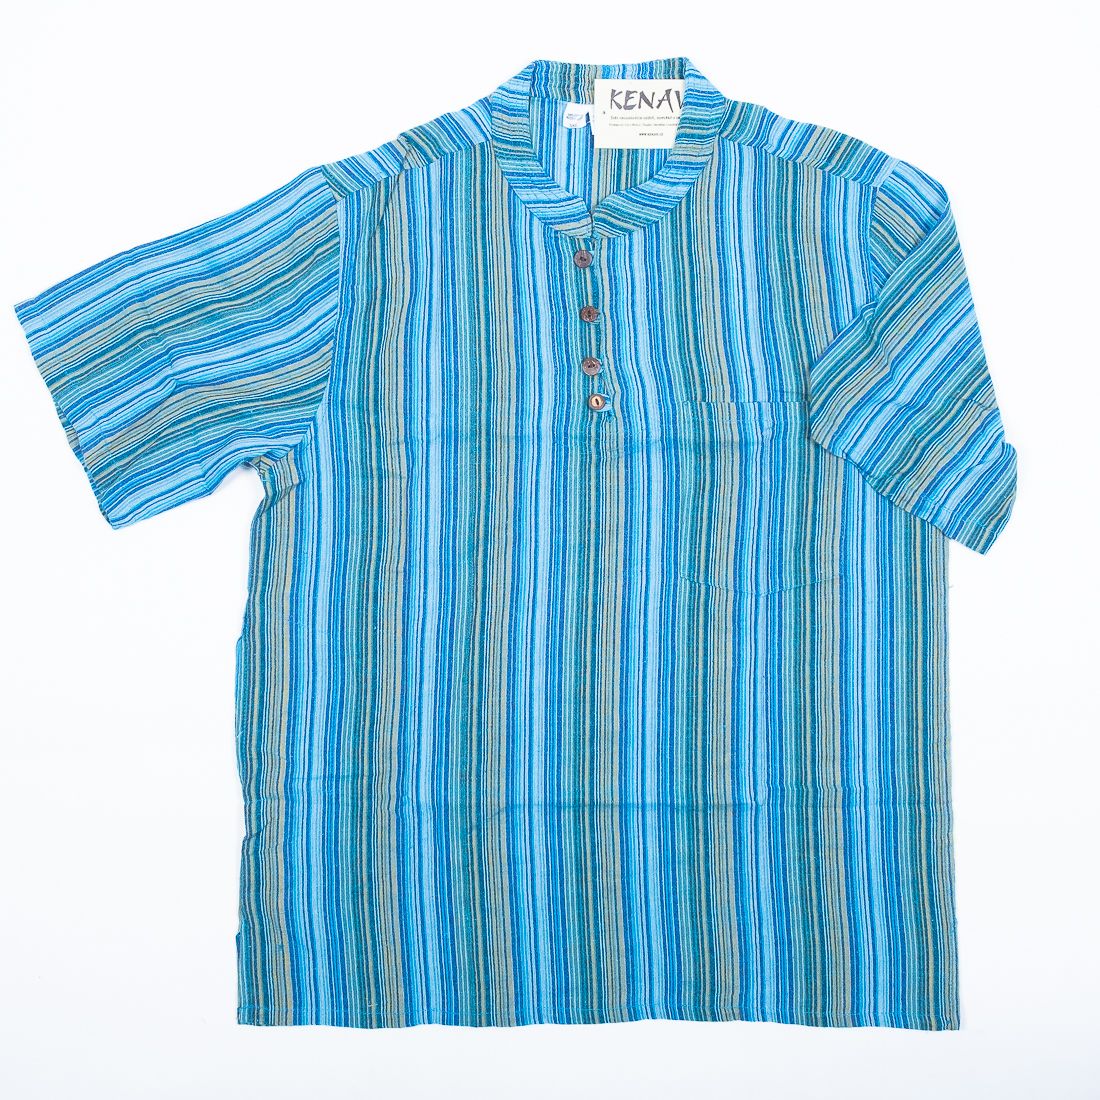 Pánská košile s krátkým rukávem NT0009-02-021 KENAVI